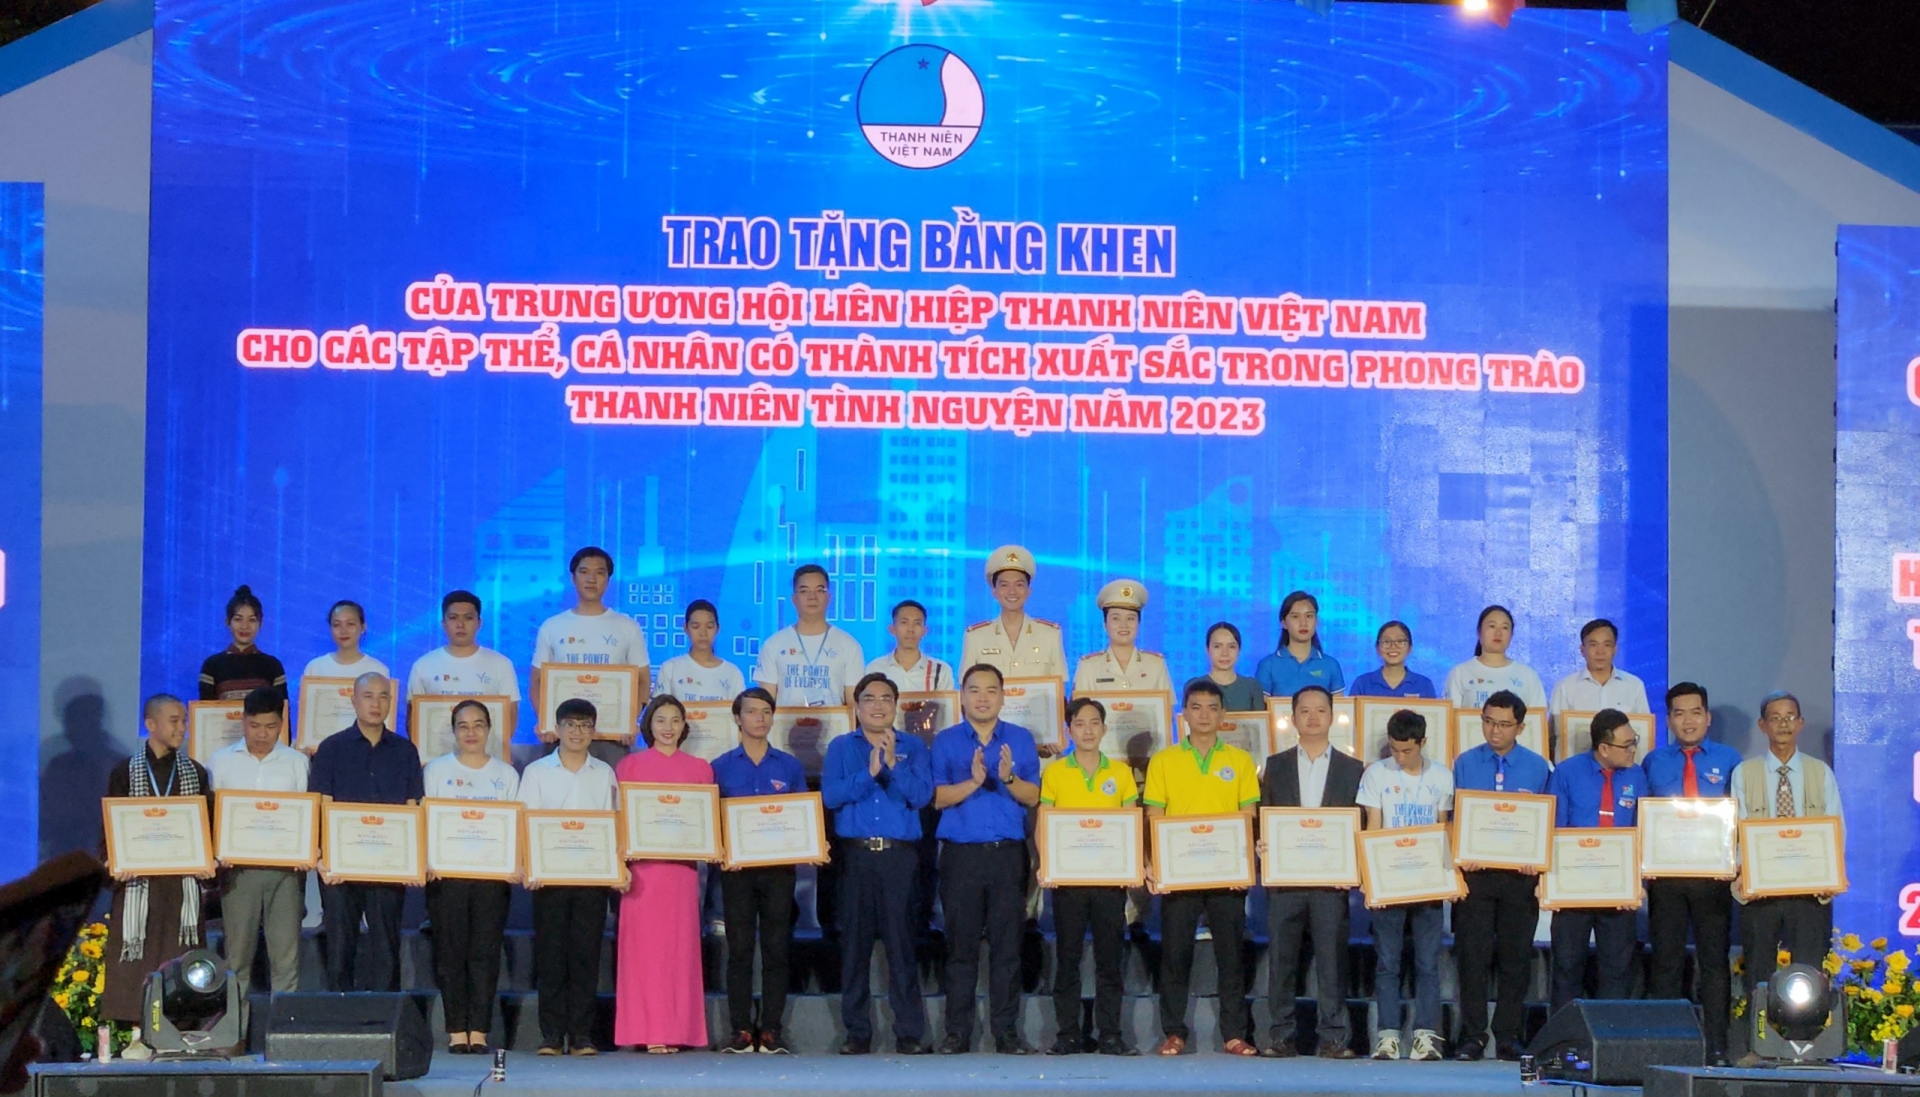 Chị Nguyễn Thị Thanh Tuyền (hàng trên, thứ 2 từ phải sang) là 1 trong 2 cá nhân của Lâm Đồng được nhận Bằng khen của Trung ương Hội LHTN Việt Nam vì có thành tích xuất sắc trong hoạt động tình nguyện vì cộng đồng năm 2023